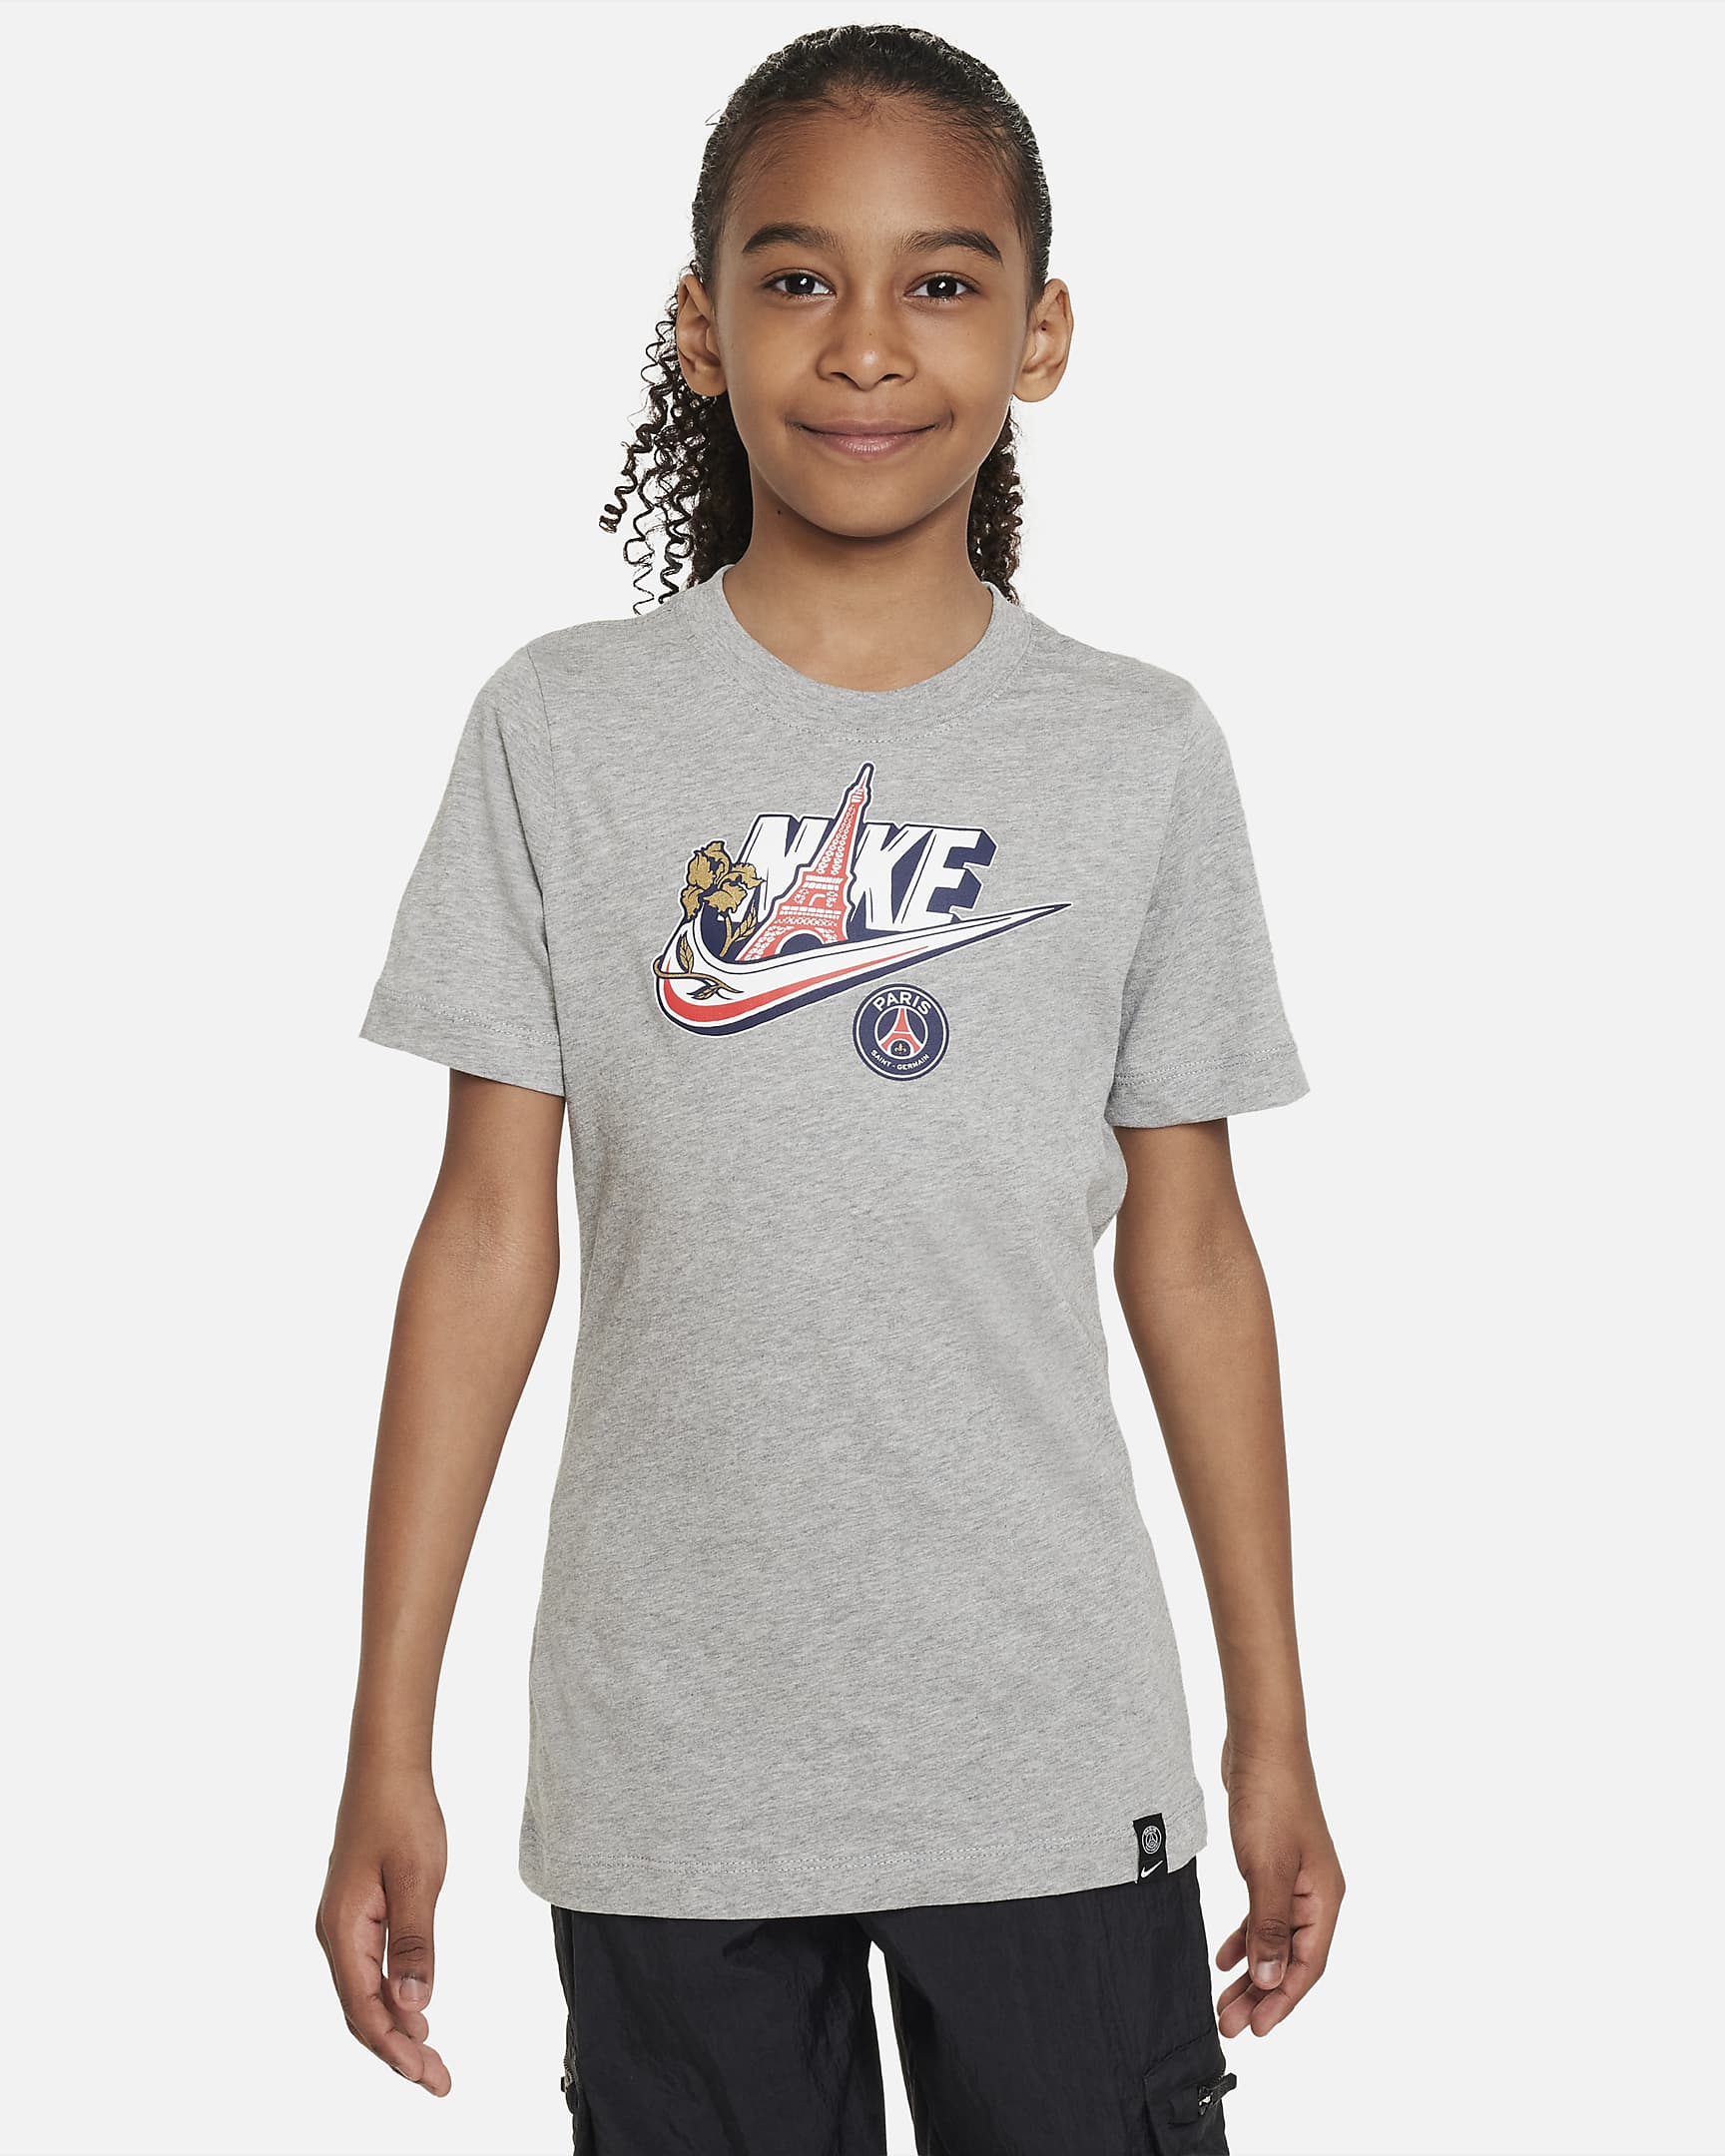 Paris Saint-Germain Big Kids' Nike T-Shirt. Nike.com